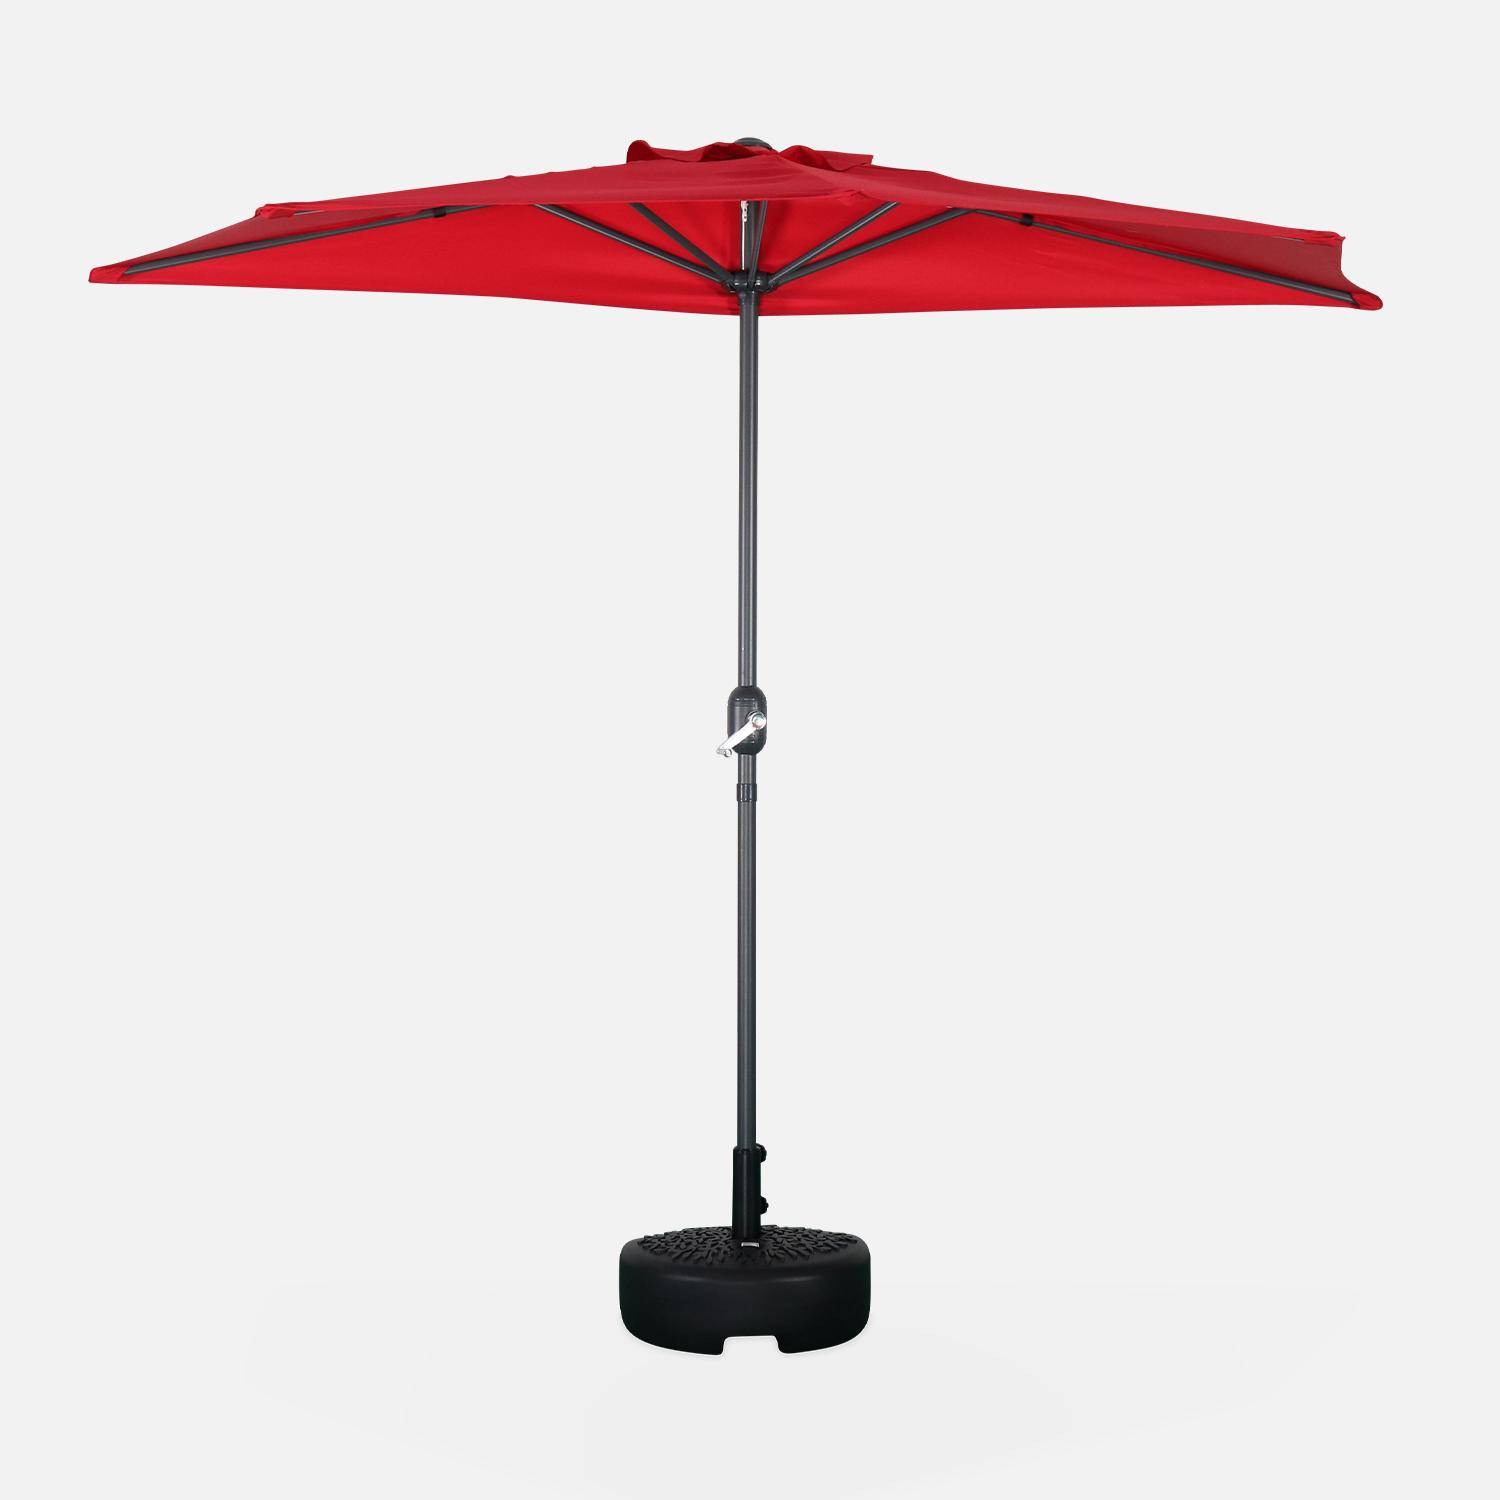  Parasol para balcón Ø250cm  – CALVI – Pequeño parasol recto, mástil en aluminio con manivela, tela color rojo,sweeek,Photo3